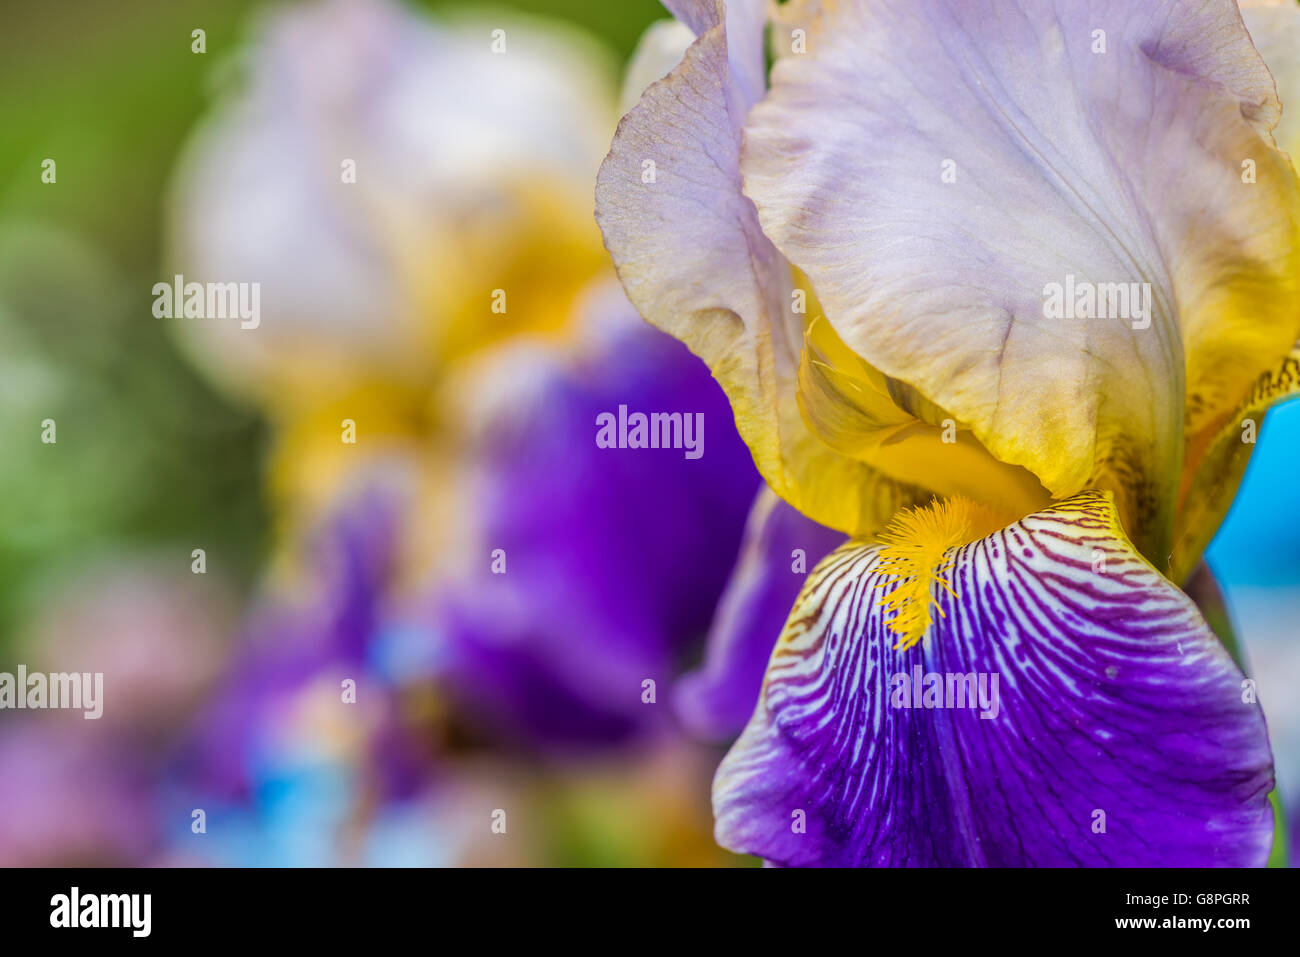 violette Iris Blume auf grünem Hintergrund Stockfoto